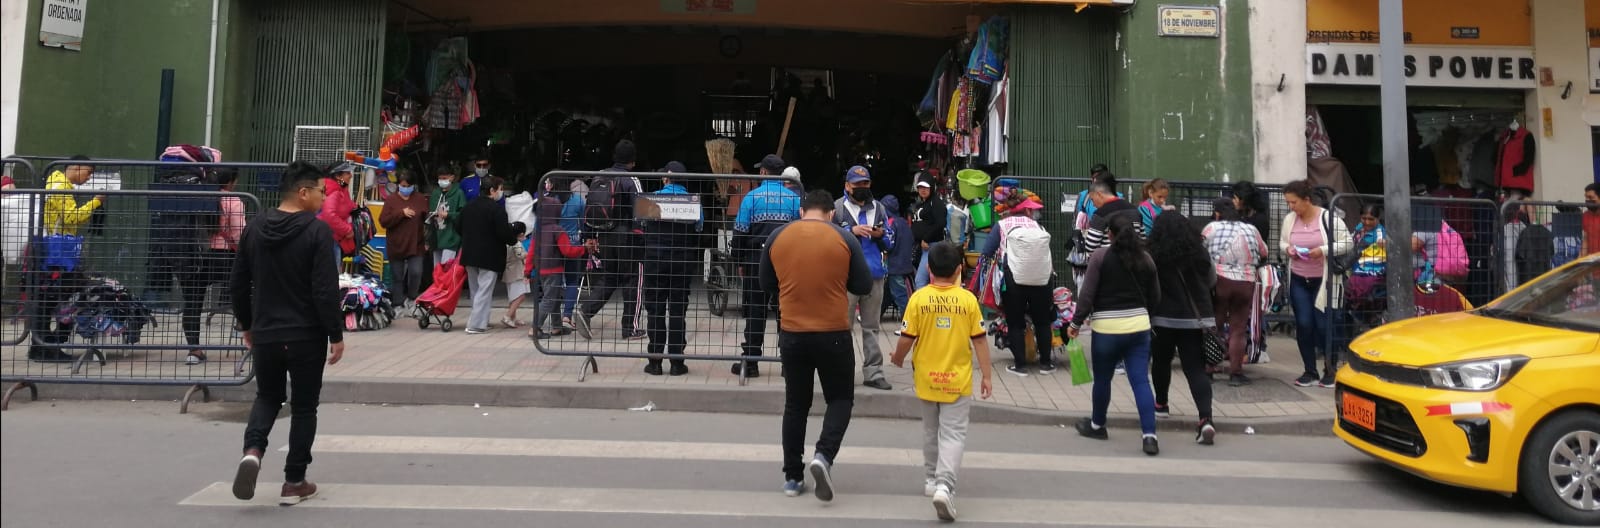 Ventas informales en Loja camufladas de campaña electoral